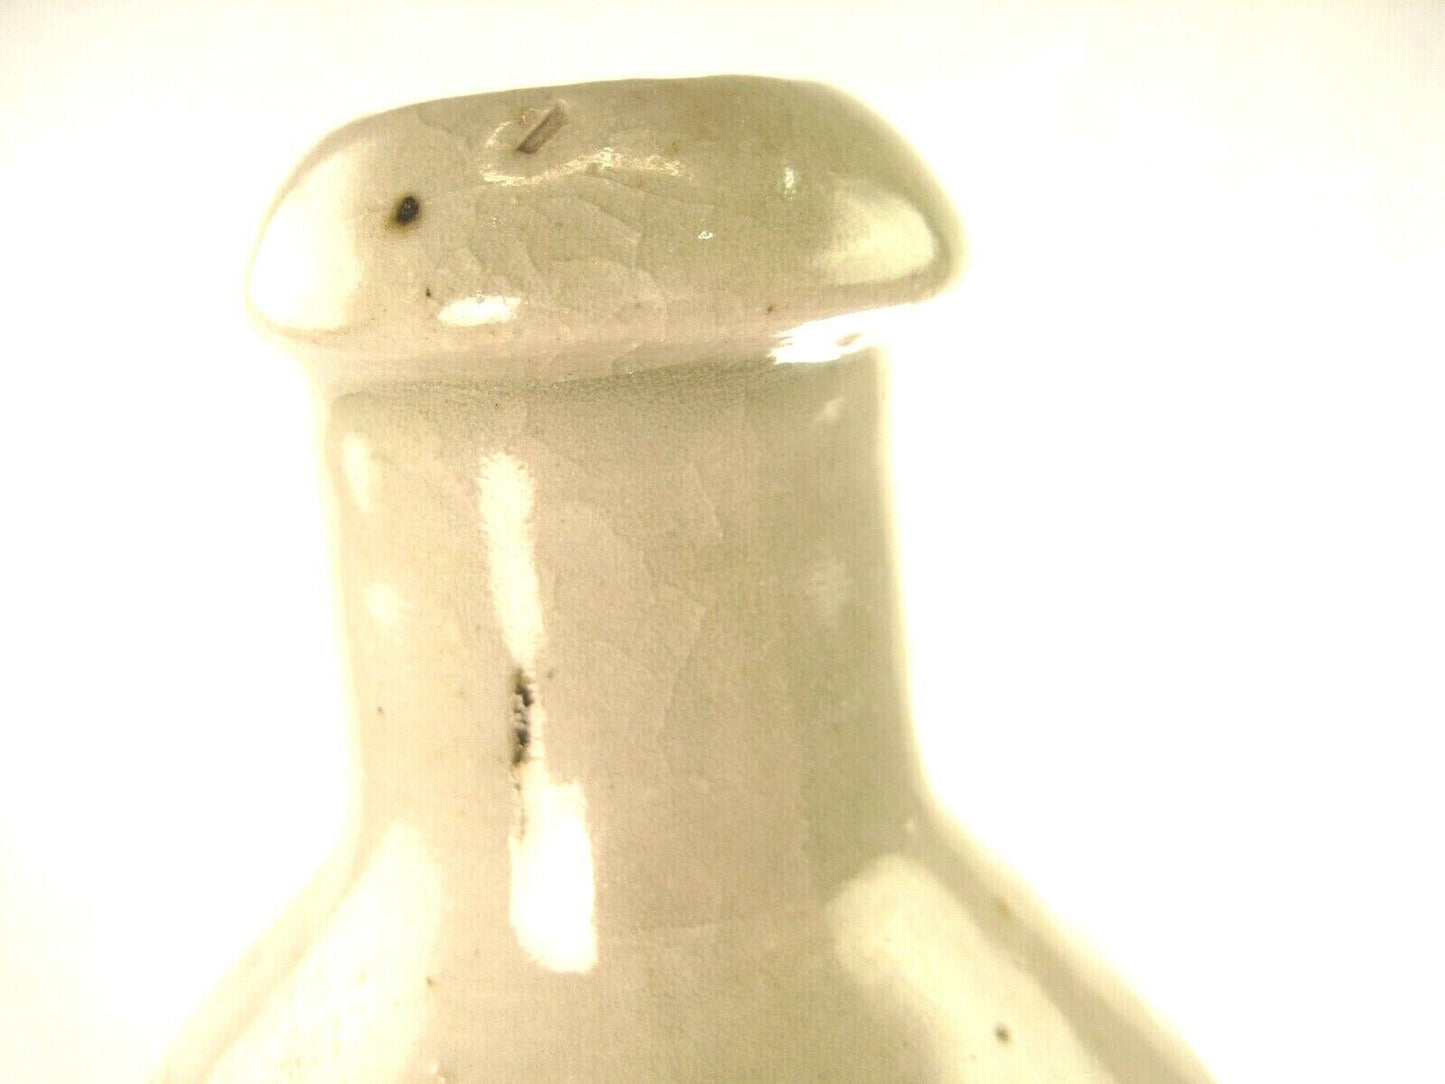 Antique Japanese (C1900) Signed Tokkuri Sake Jug Sake Bottle (Vase) 8"